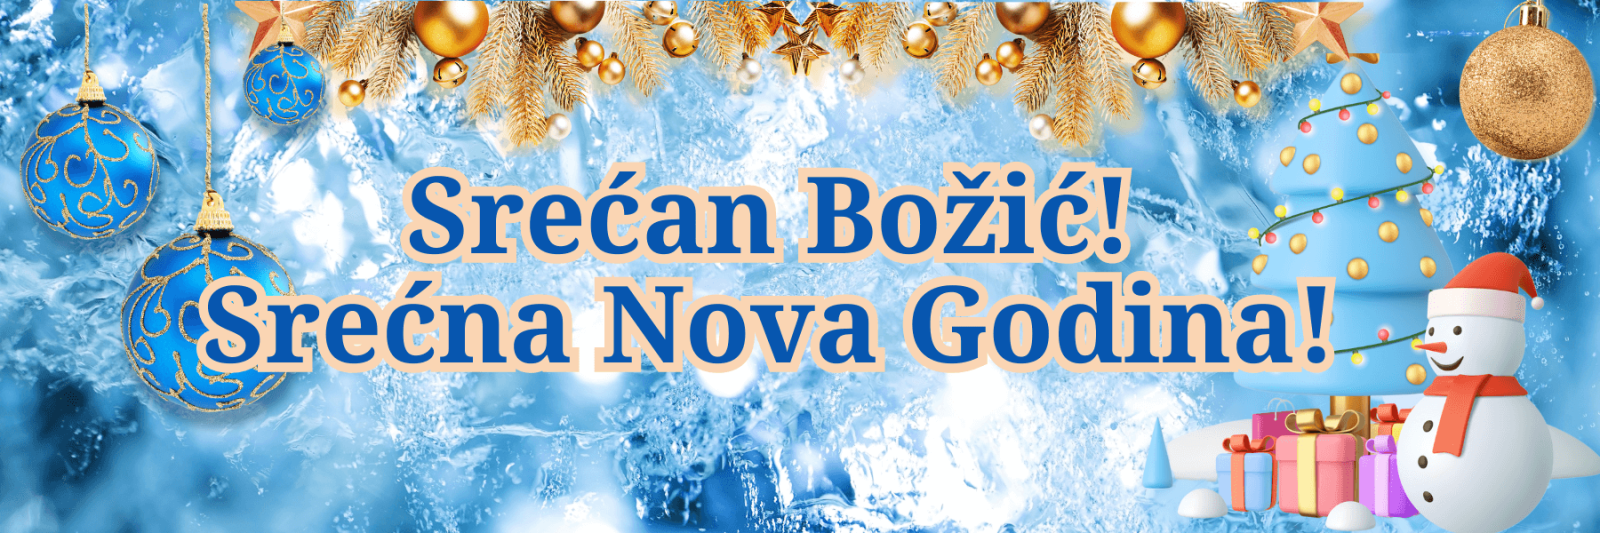 Frohe Weihnachten und ein glückliches Neues Jahr! auf Montenegrinisch